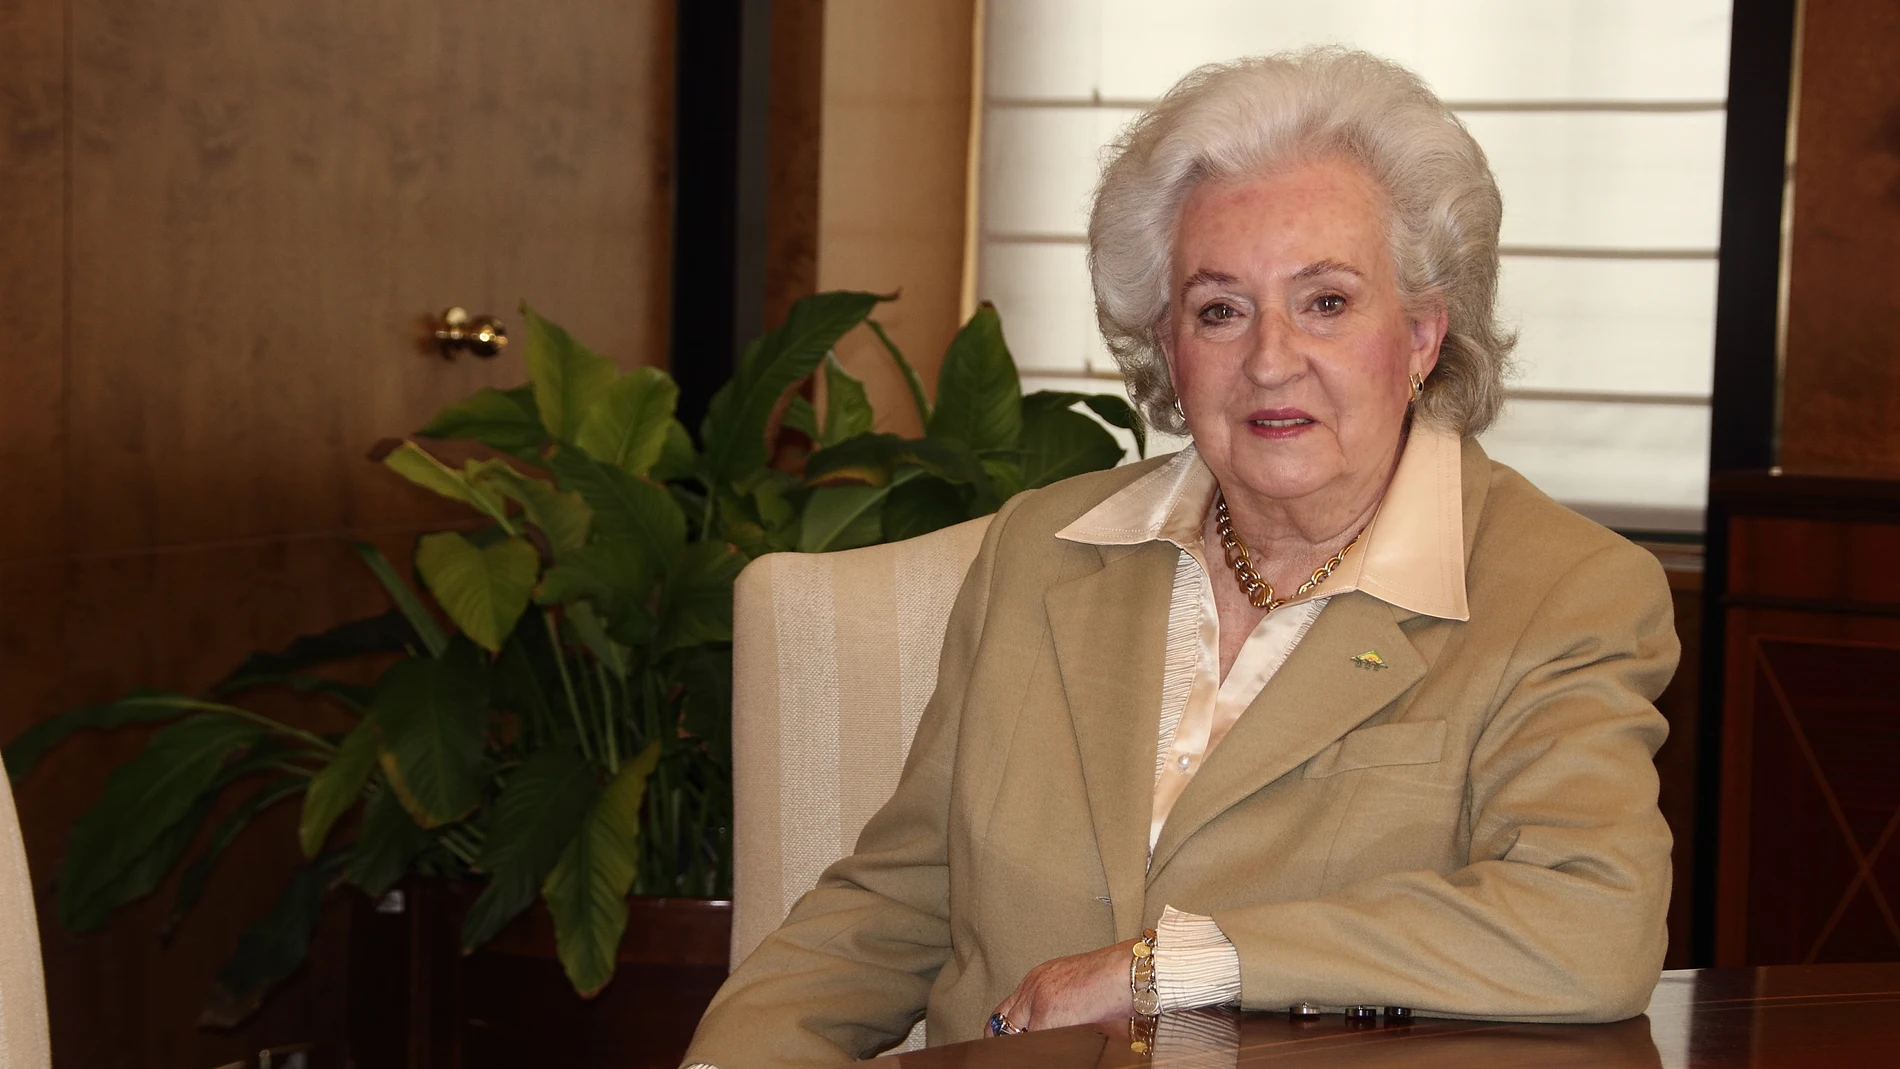 Muere la Infanta Pilar, hermana del Rey Juan Carlos, a los 83 años